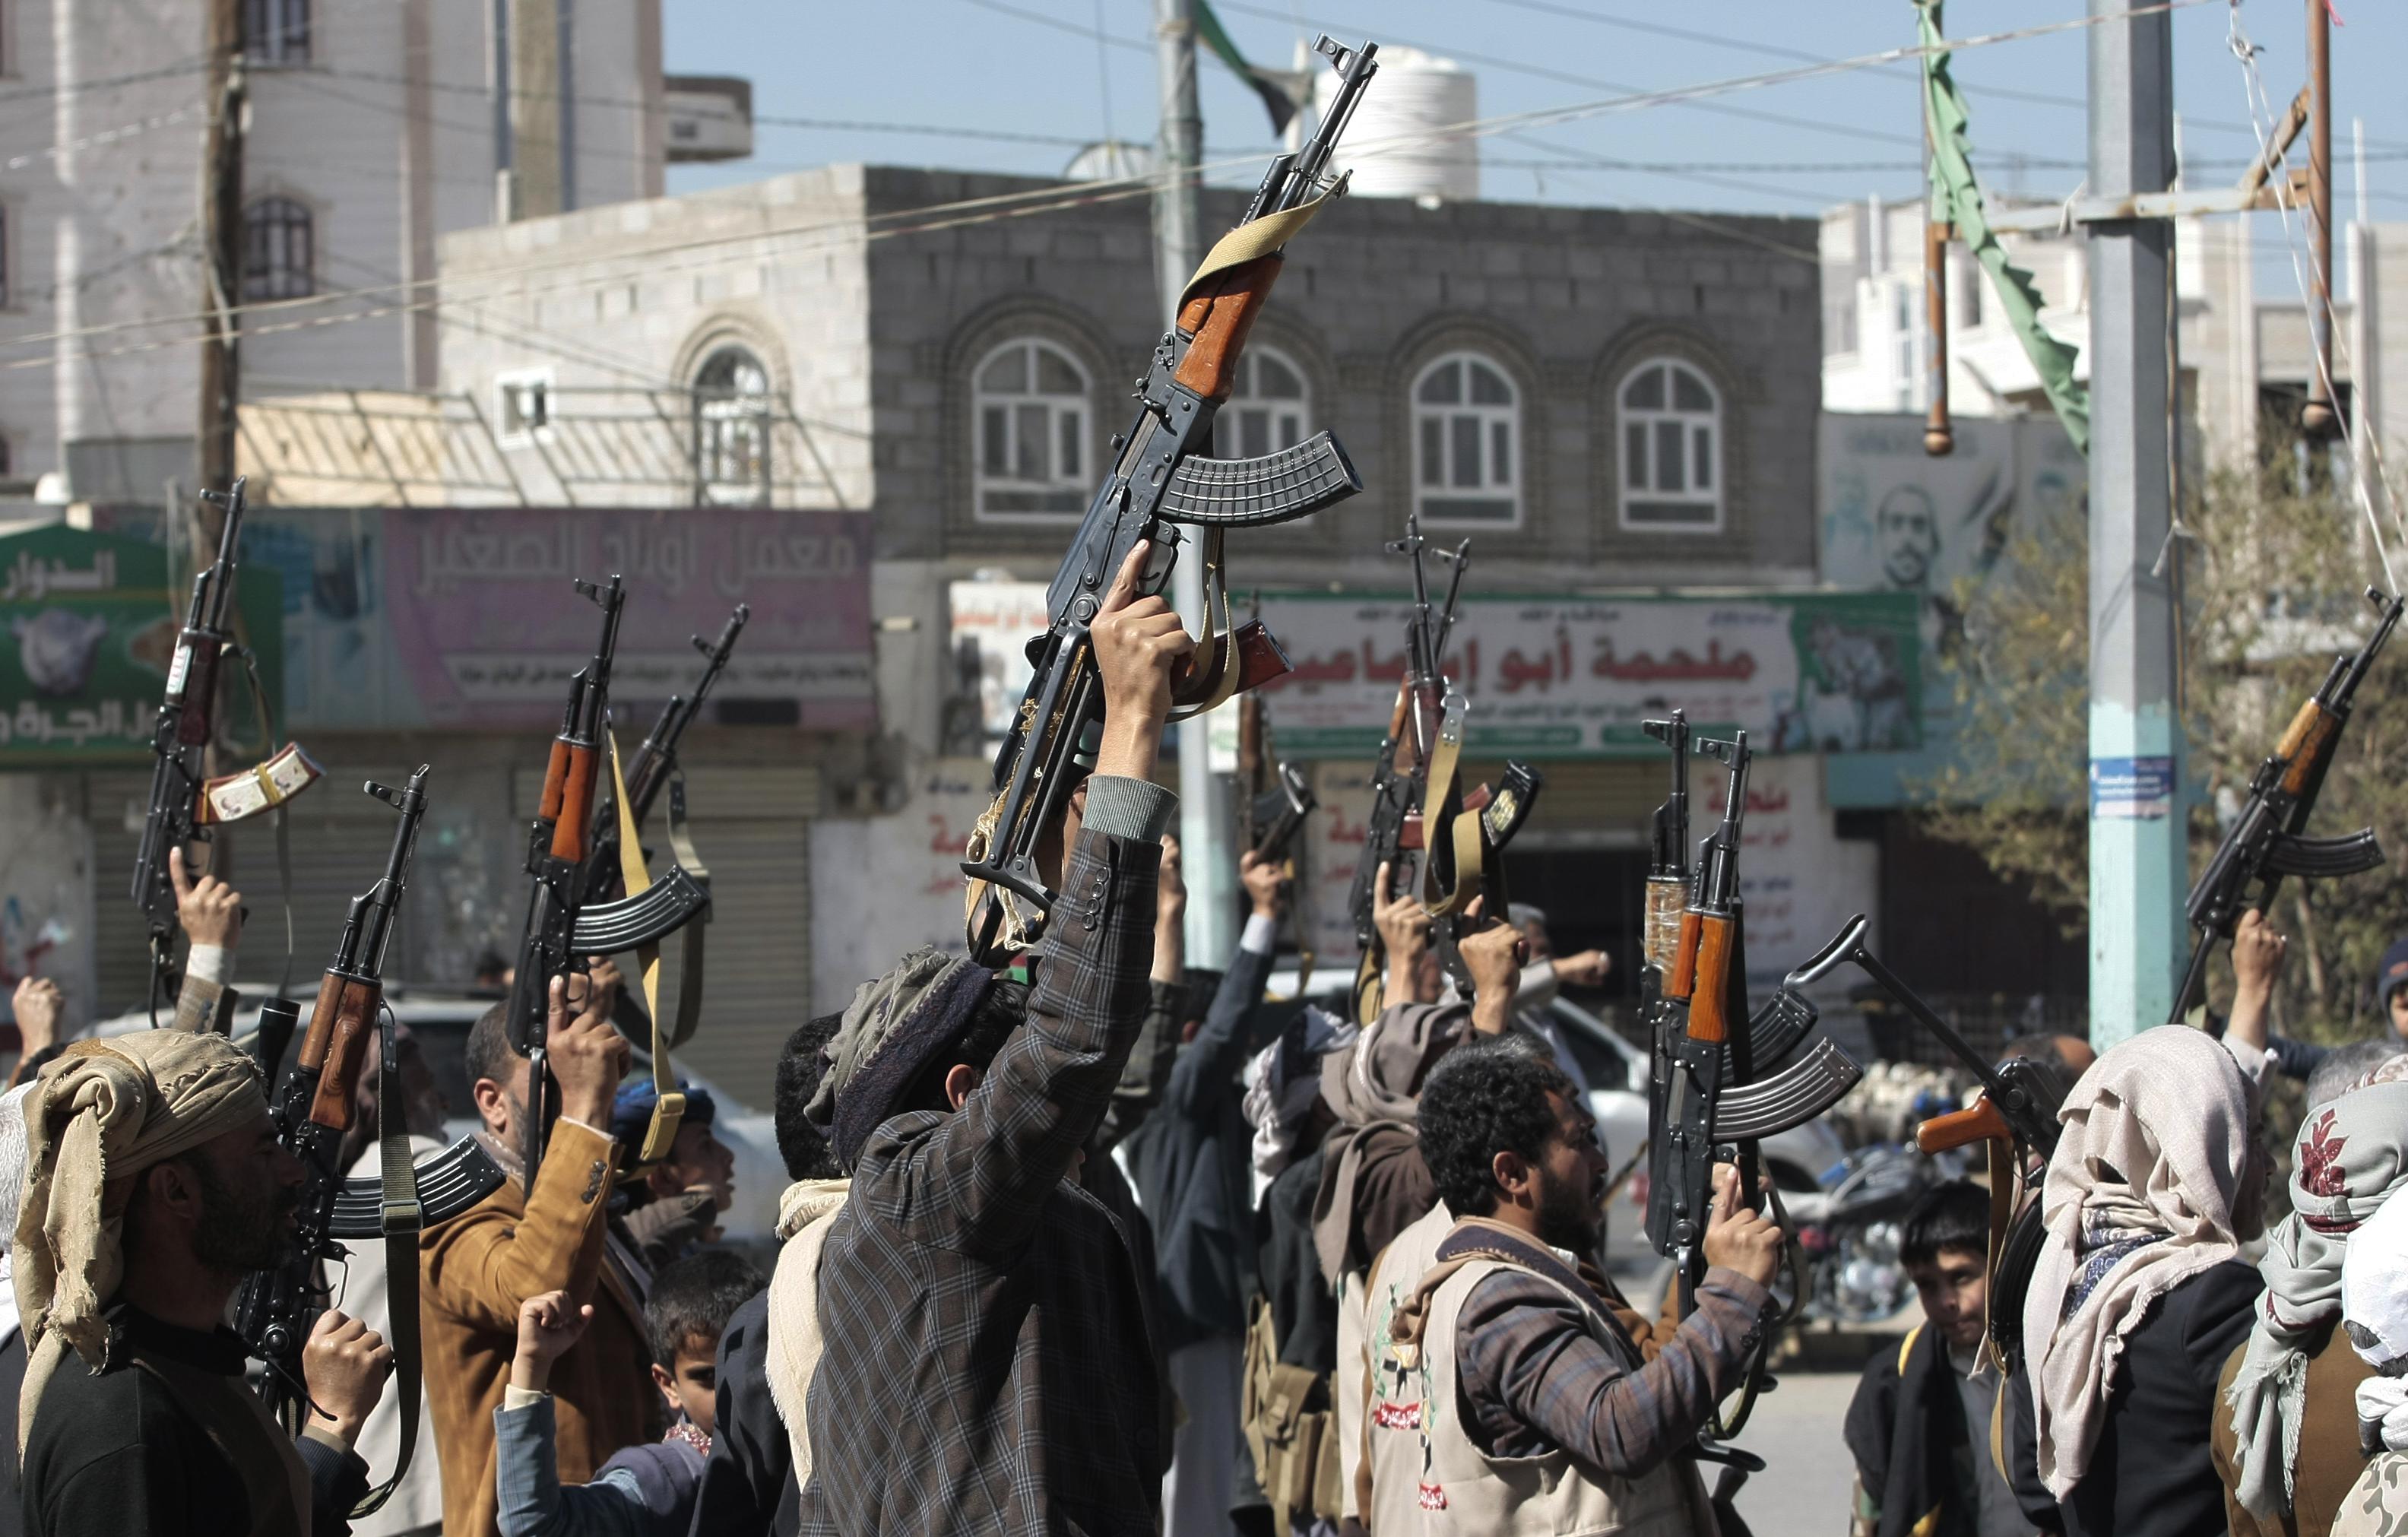 18 attacchi aerei : Gli Houthi dello Yemen accusano Stati Uniti e Regno Unito